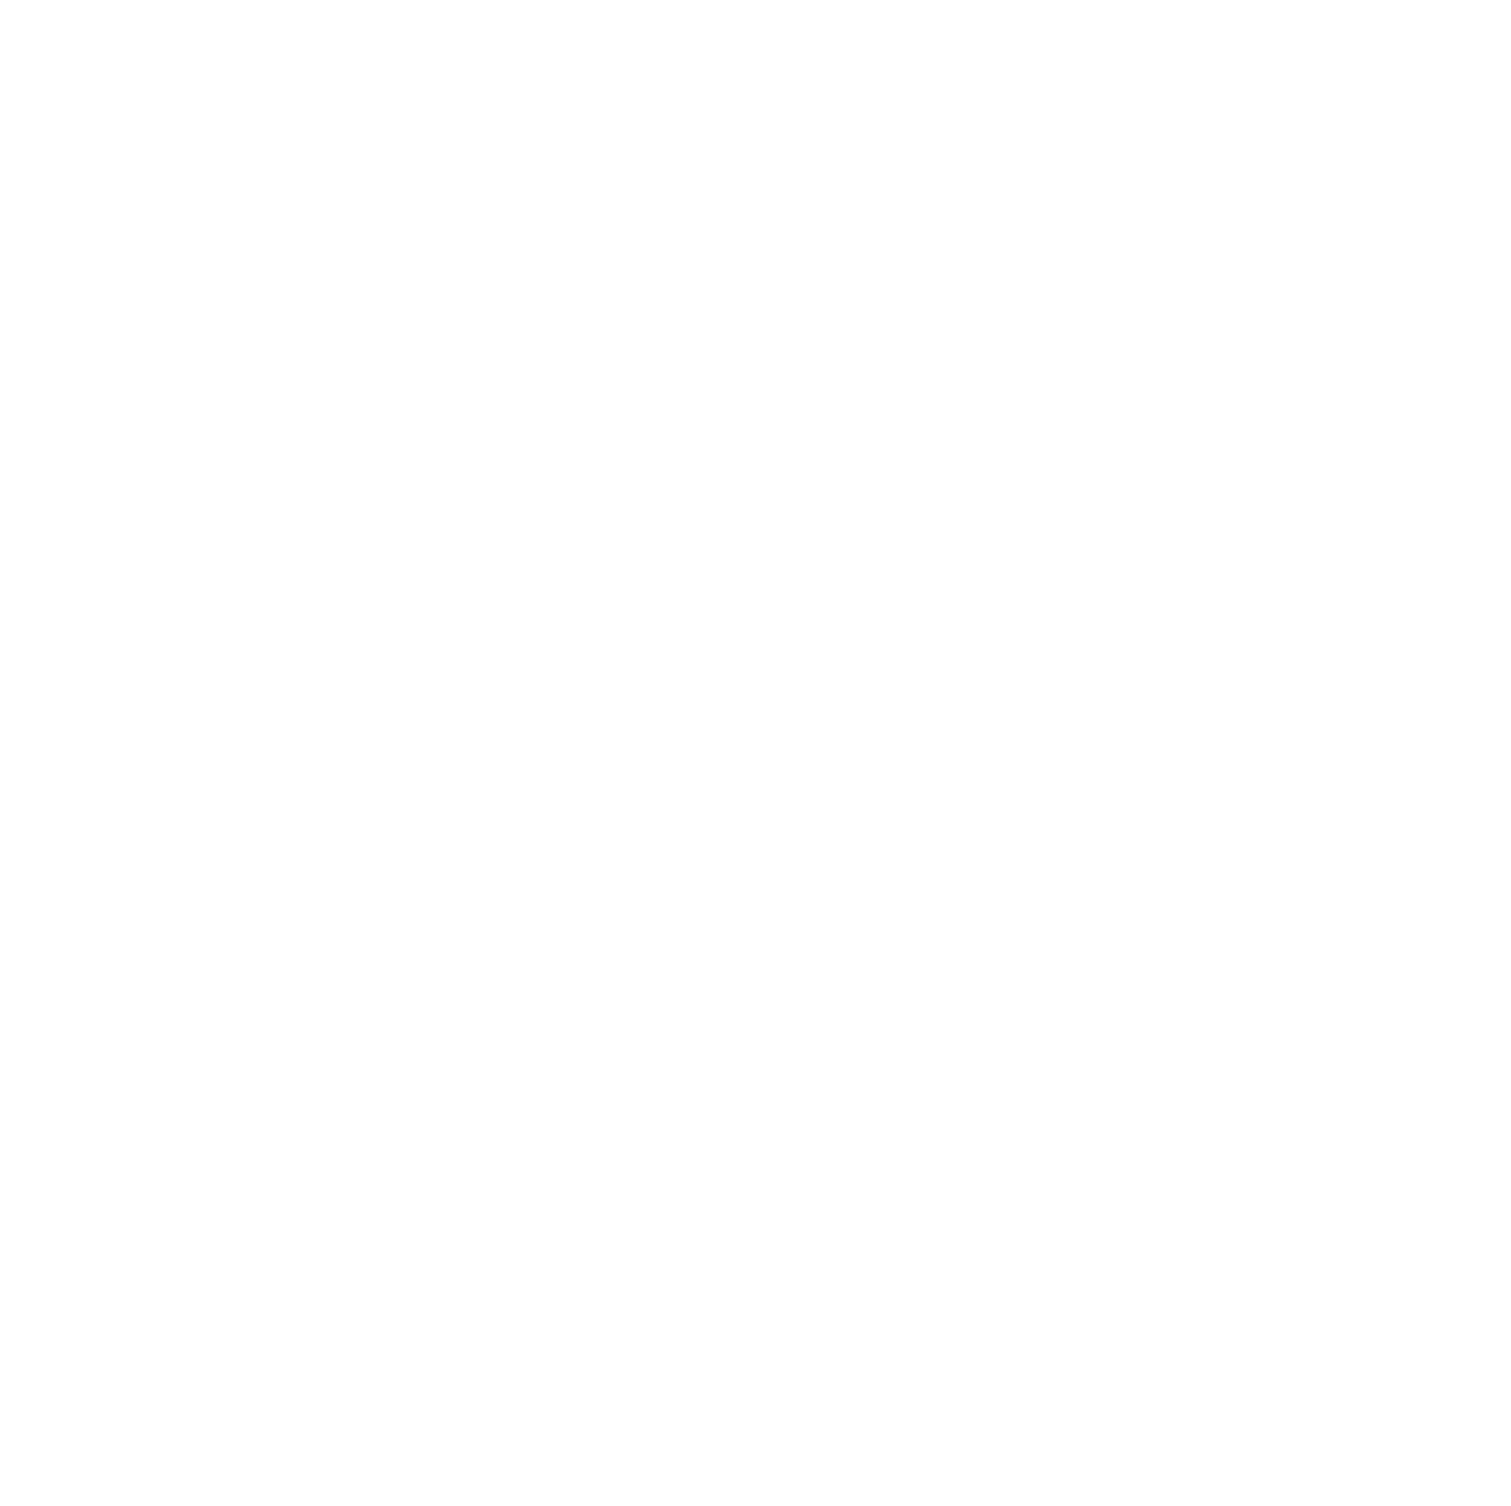 Bâloise logo pour fonds sombres (PNG transparent)